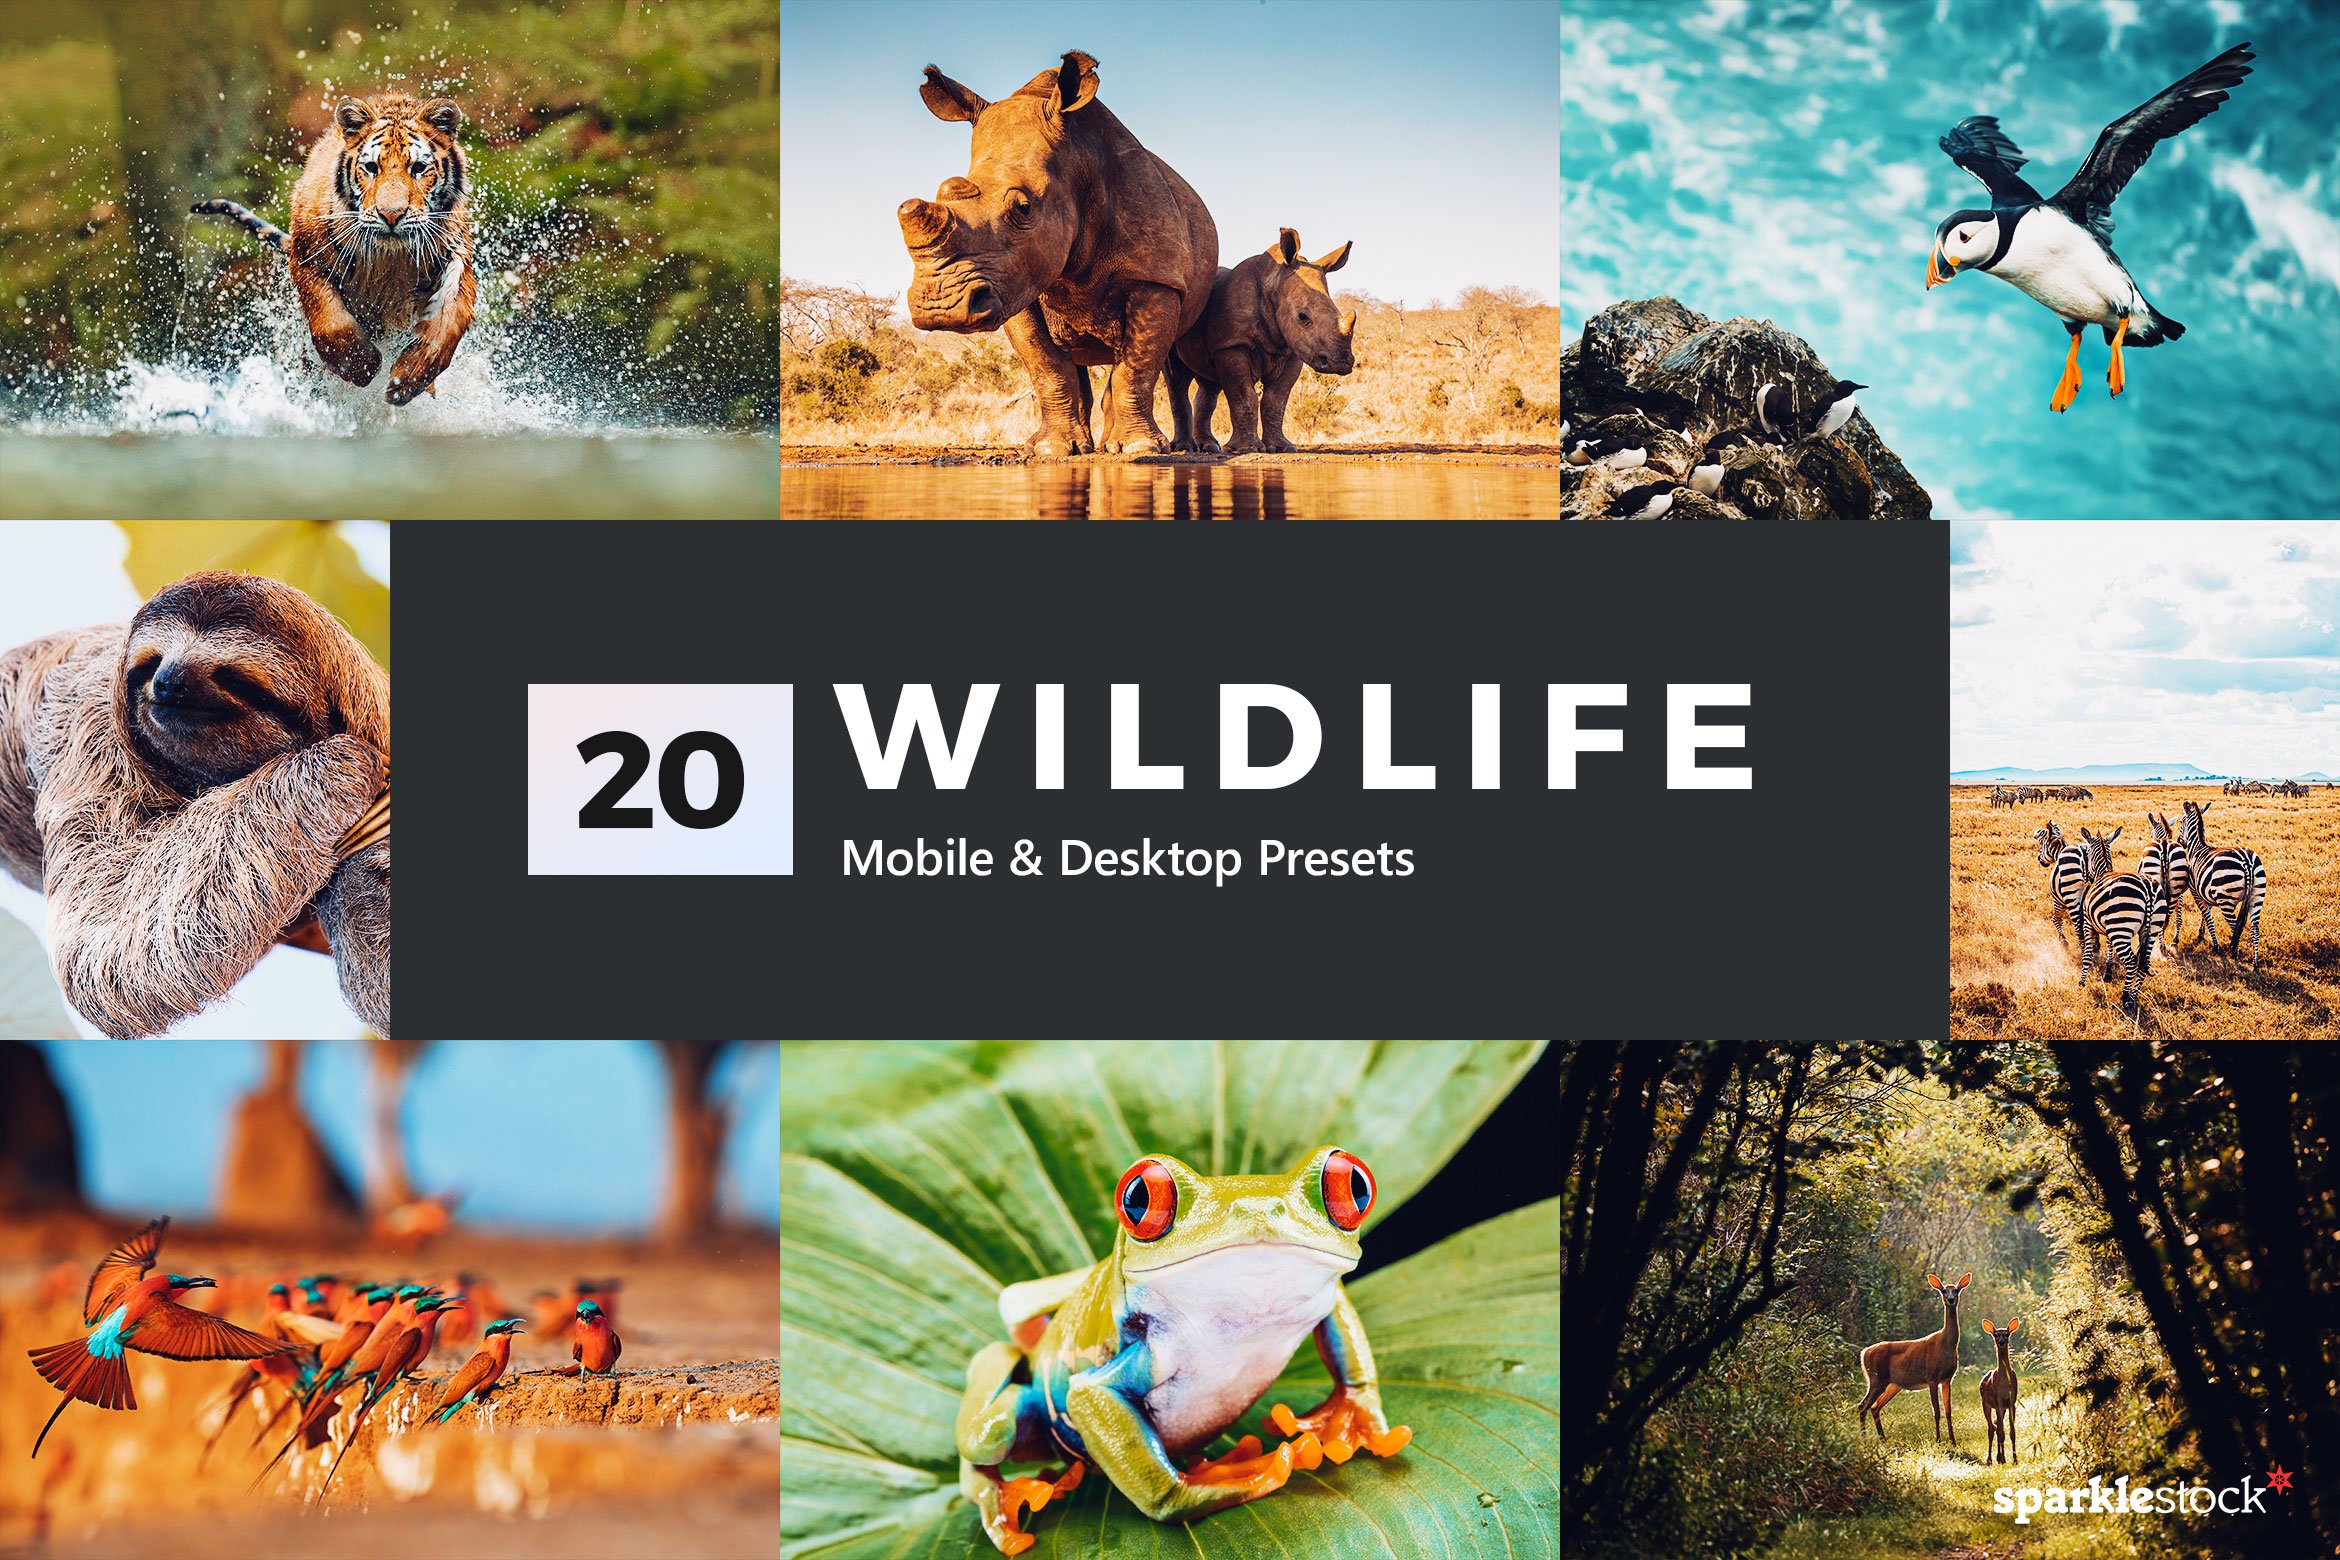 20 Wildlife Lightroom Presets & LUTscover image.